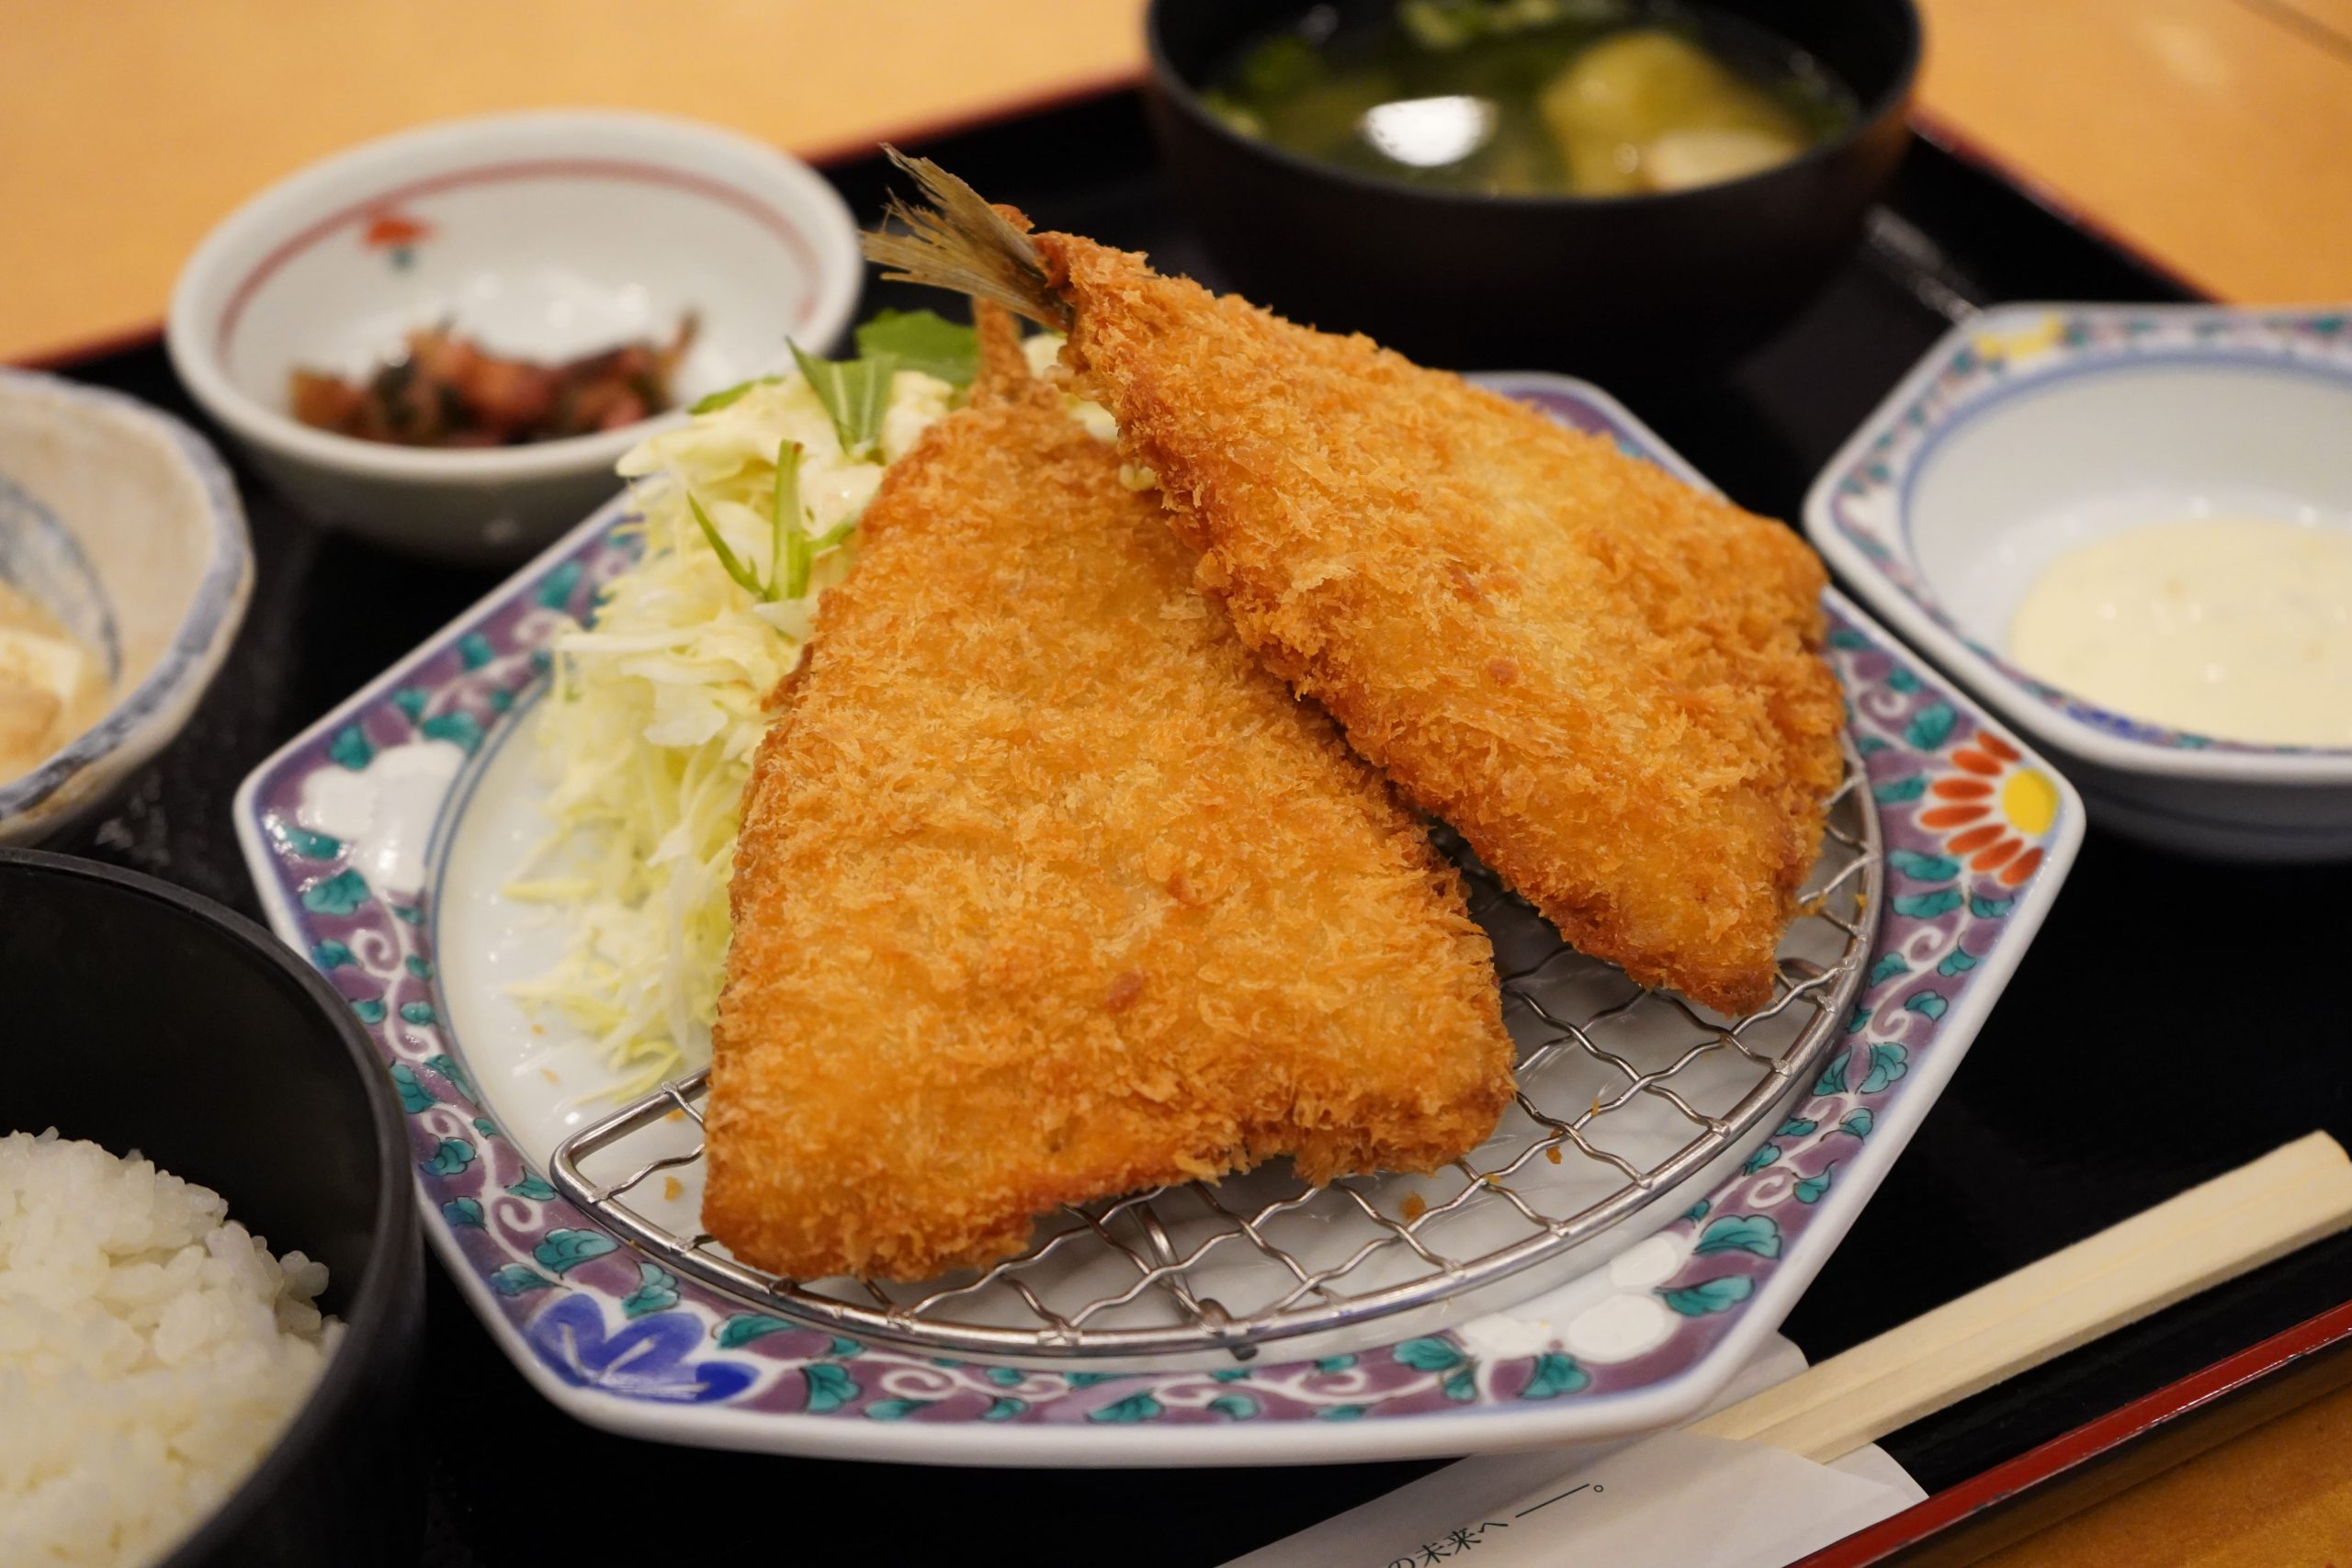 アジフライが食べられるお店 松浦市の観光情報サイト 松恋